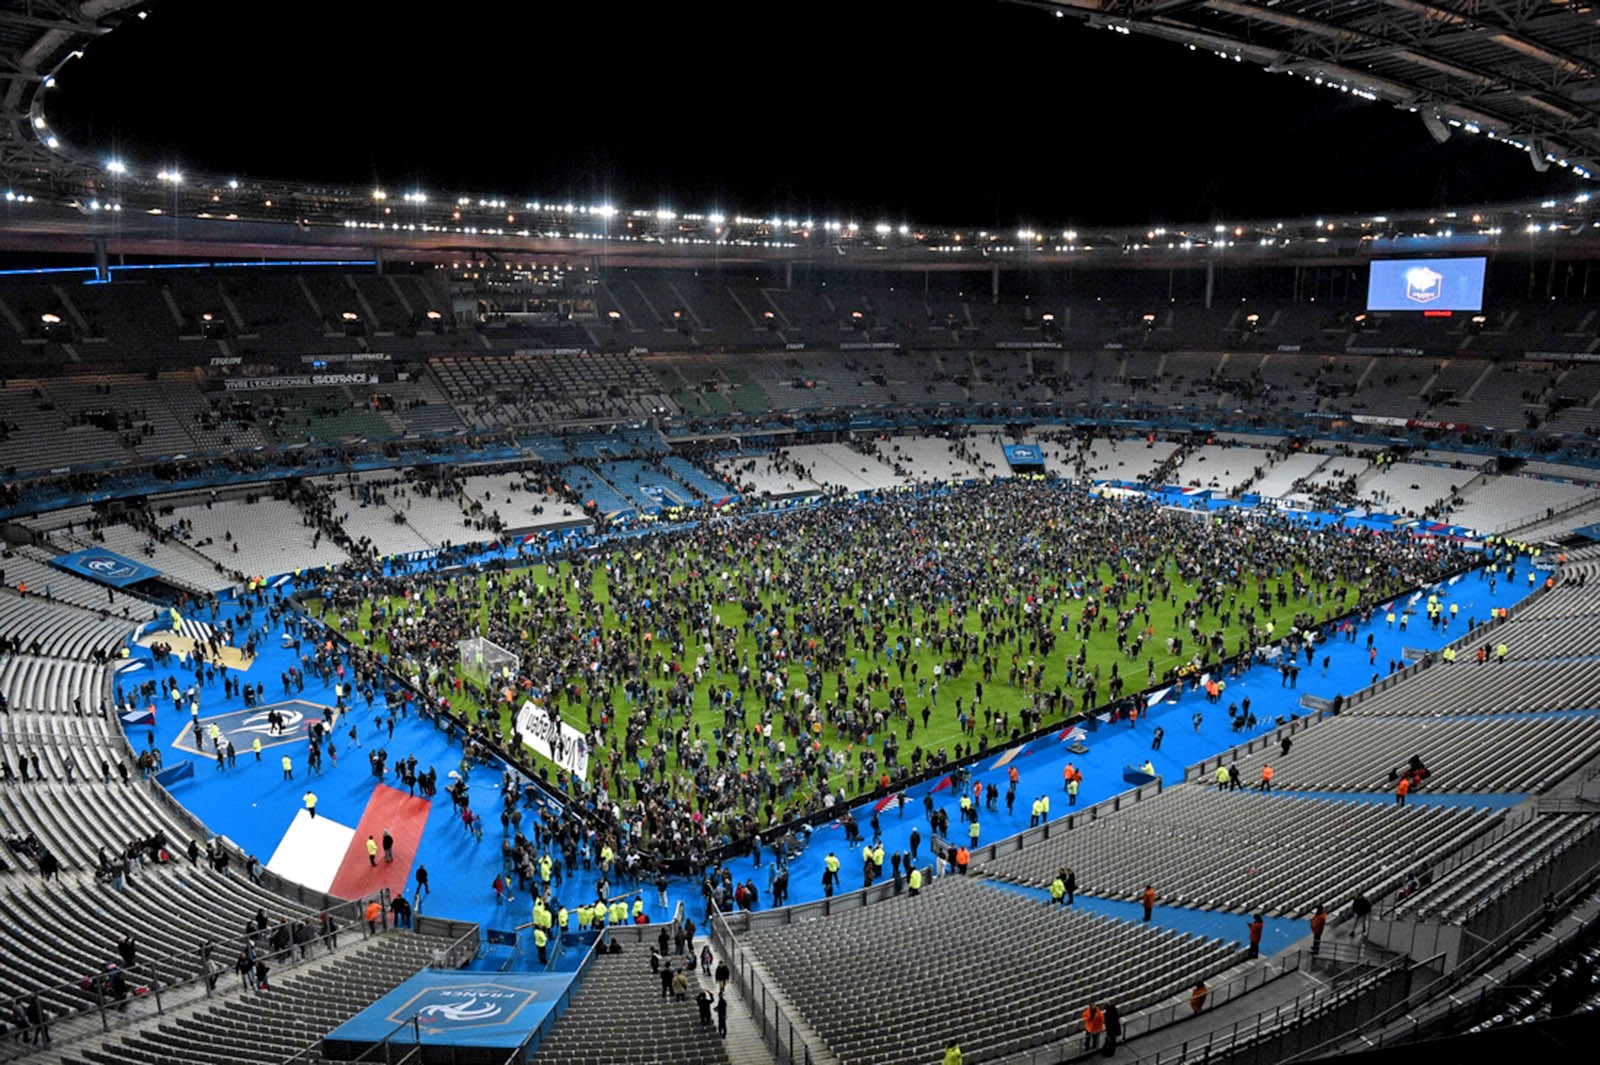 Lo sợ khủng bố, khán giả sẽ bị cấm vào sân ở EURO 2016 